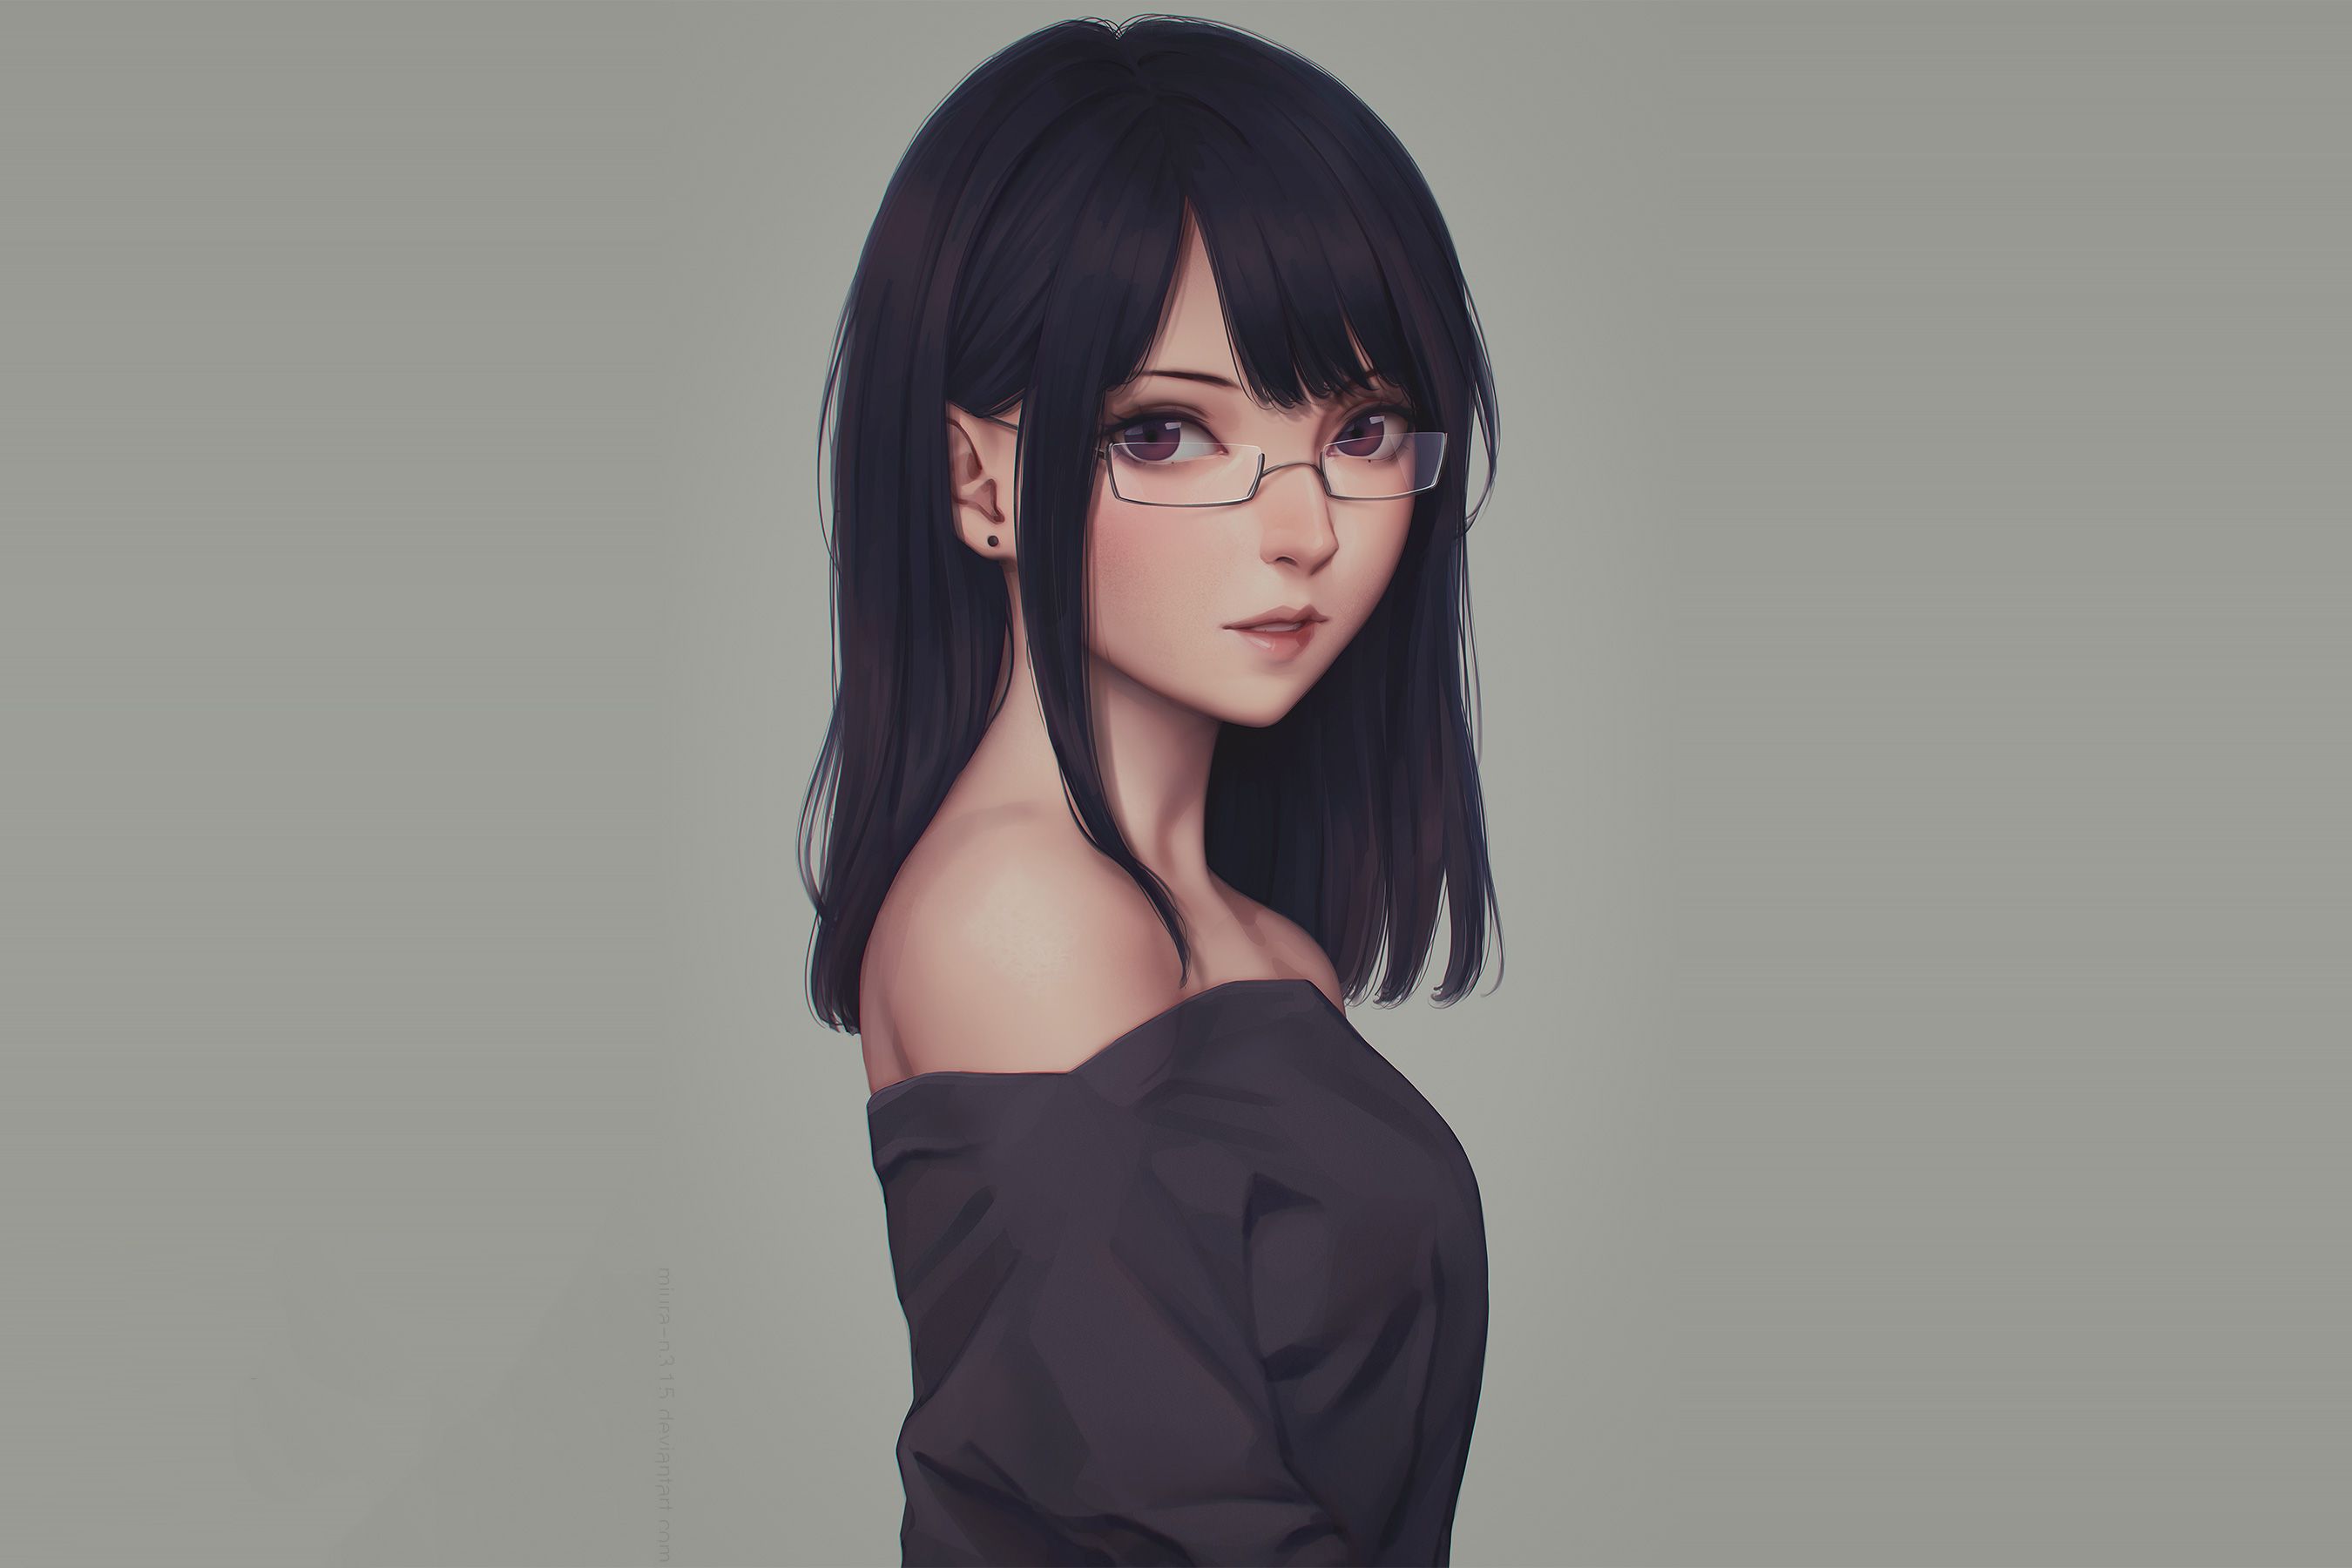 Anime Glasses Girl, HD Anime, 4k Wallpaper, Image, Background